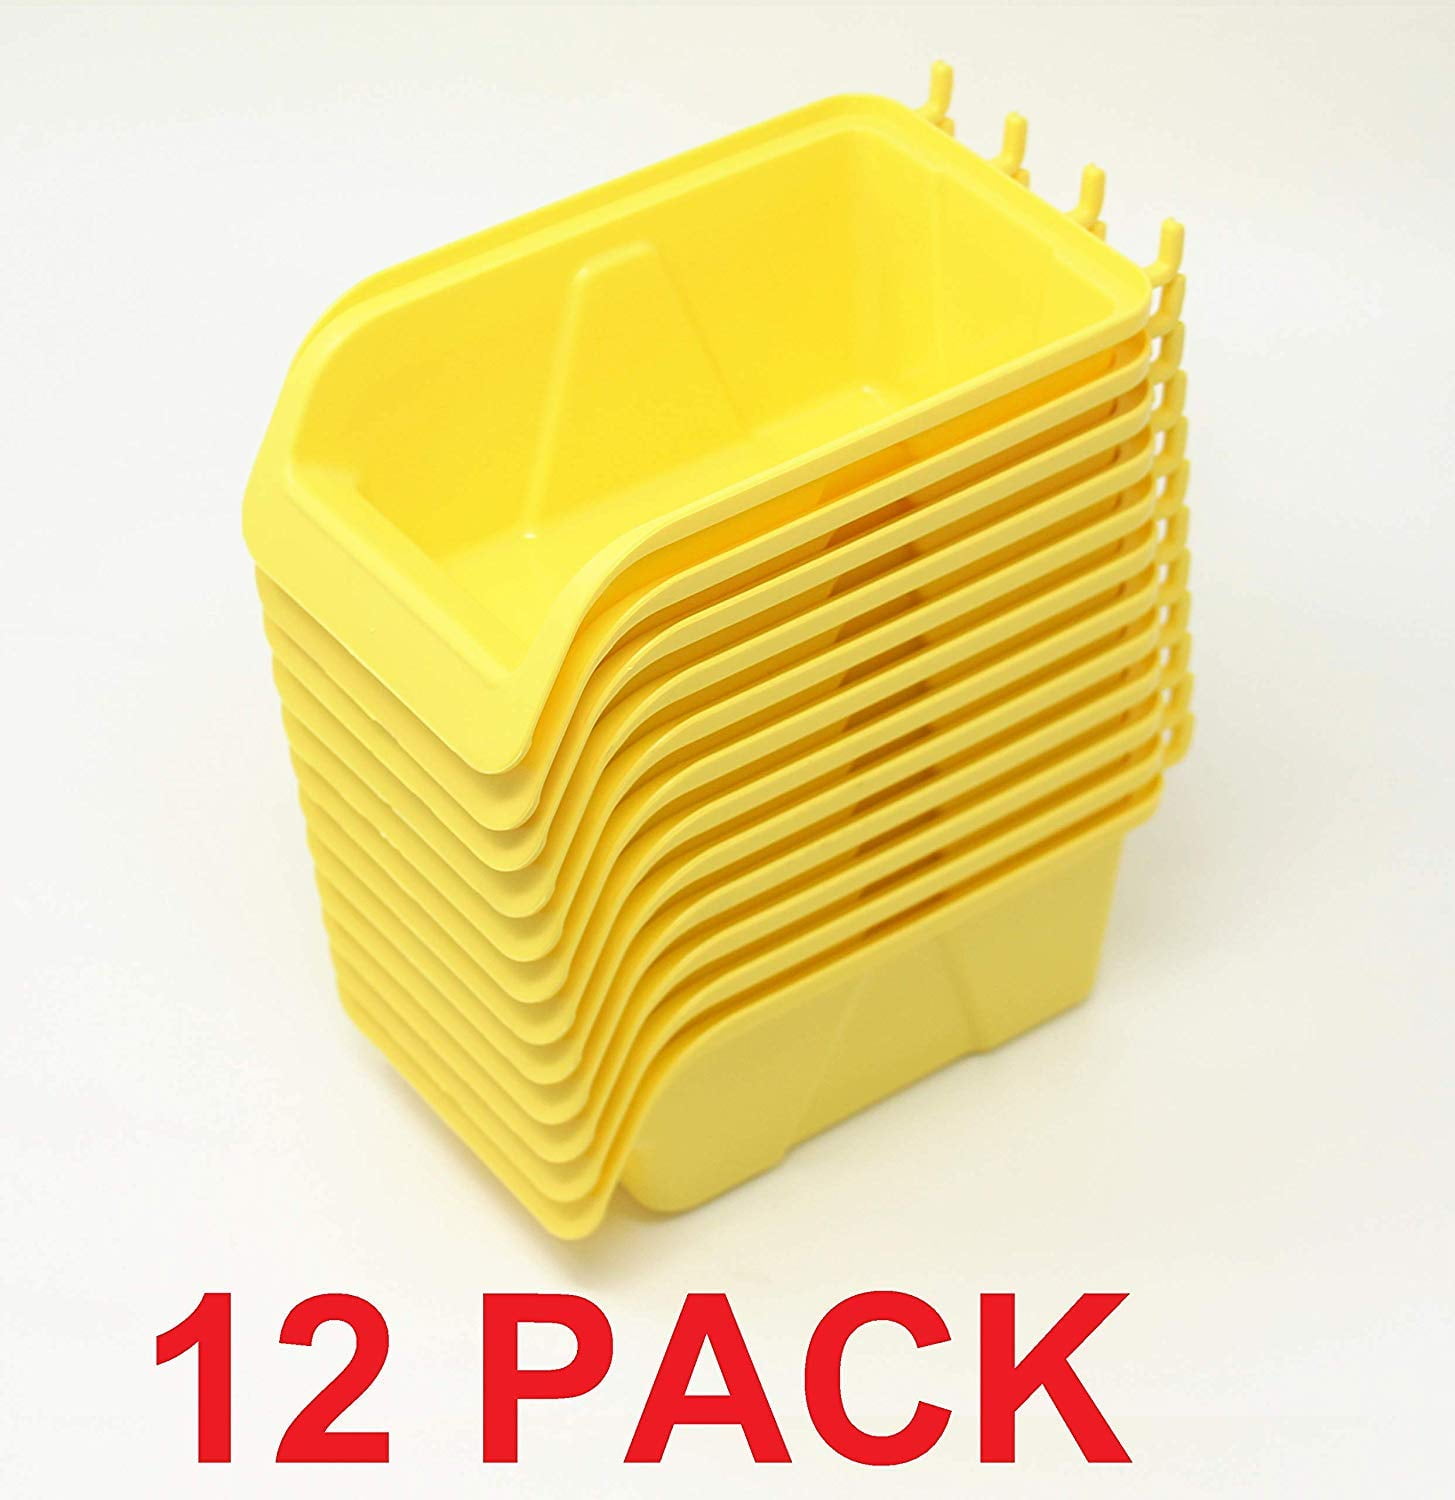 Pegboard Bin Kit 8 Pack Storage Parts Craft Organizer Workbench Bins Accessories